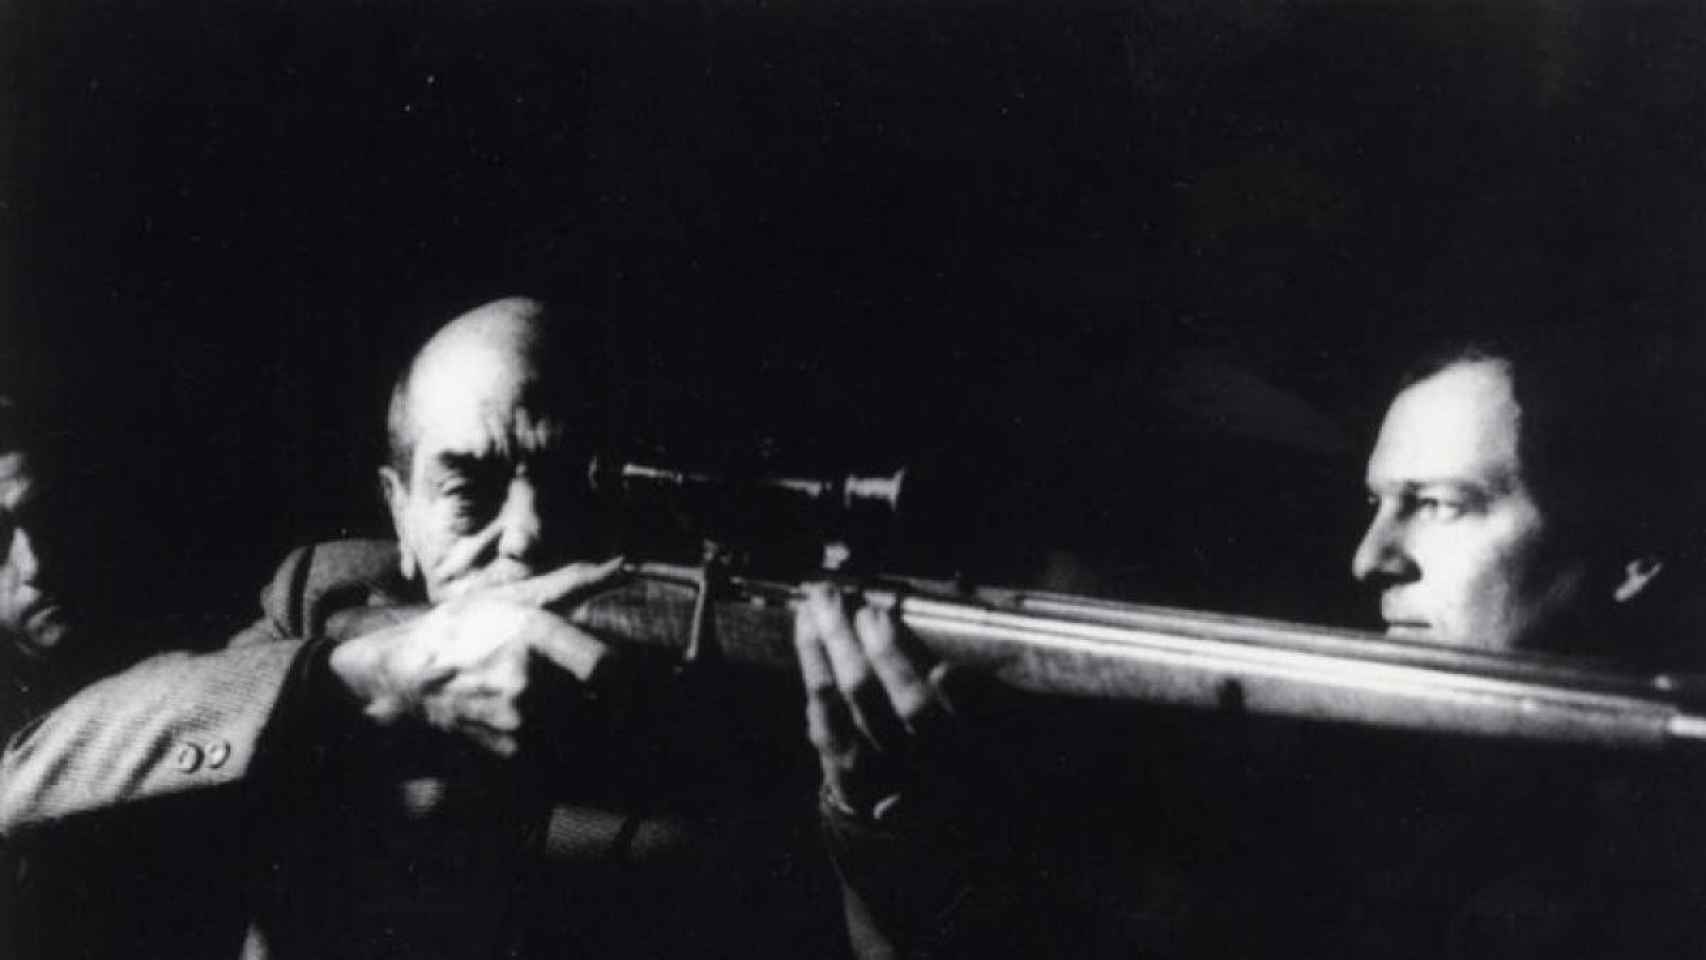 El director de cine Luis Buñuel, con un fusil